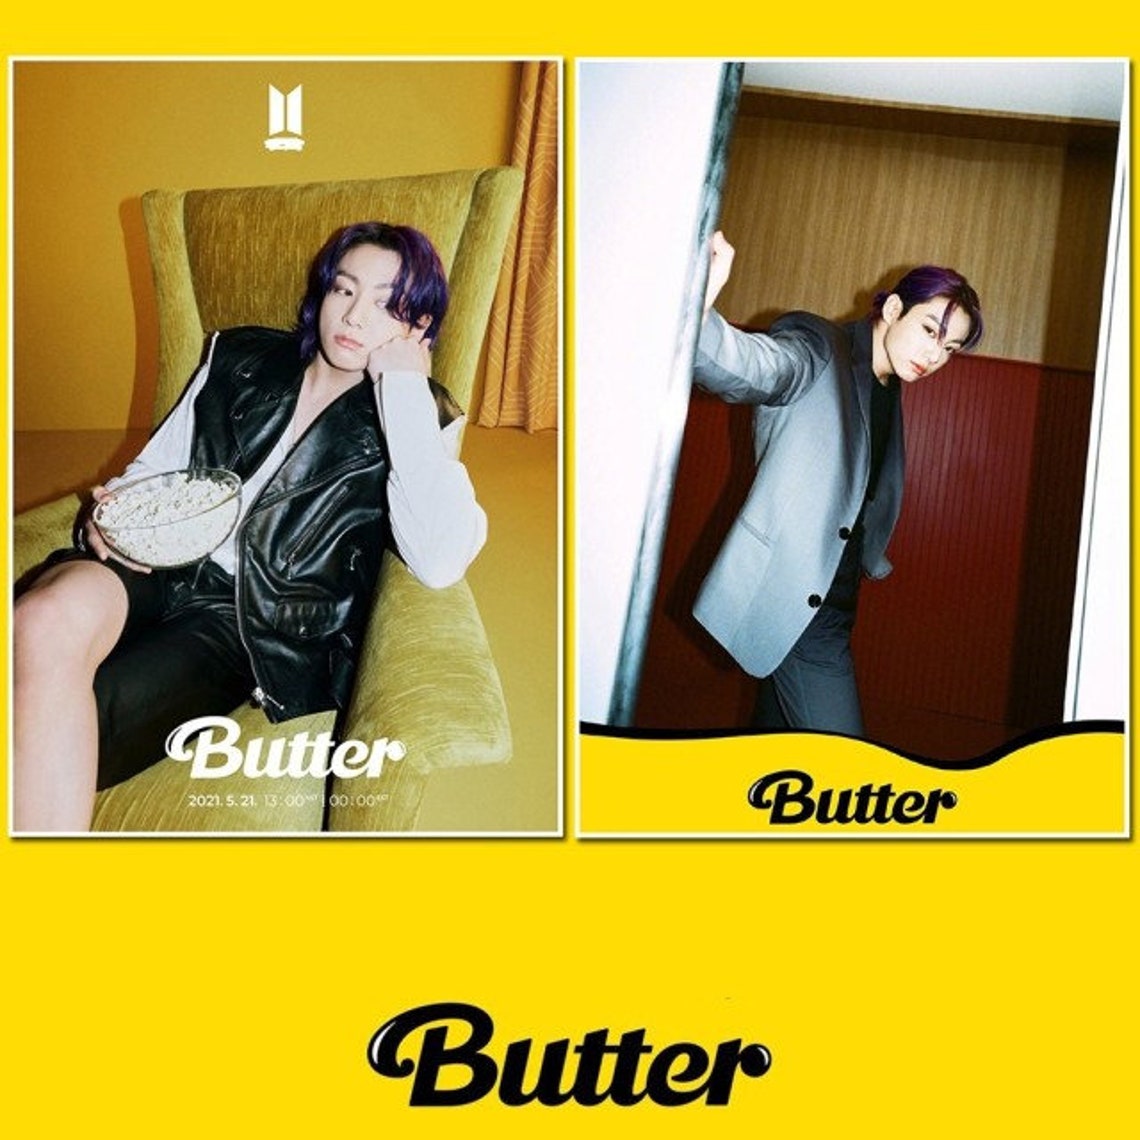 Ảnh BTS Butter - Jungkook